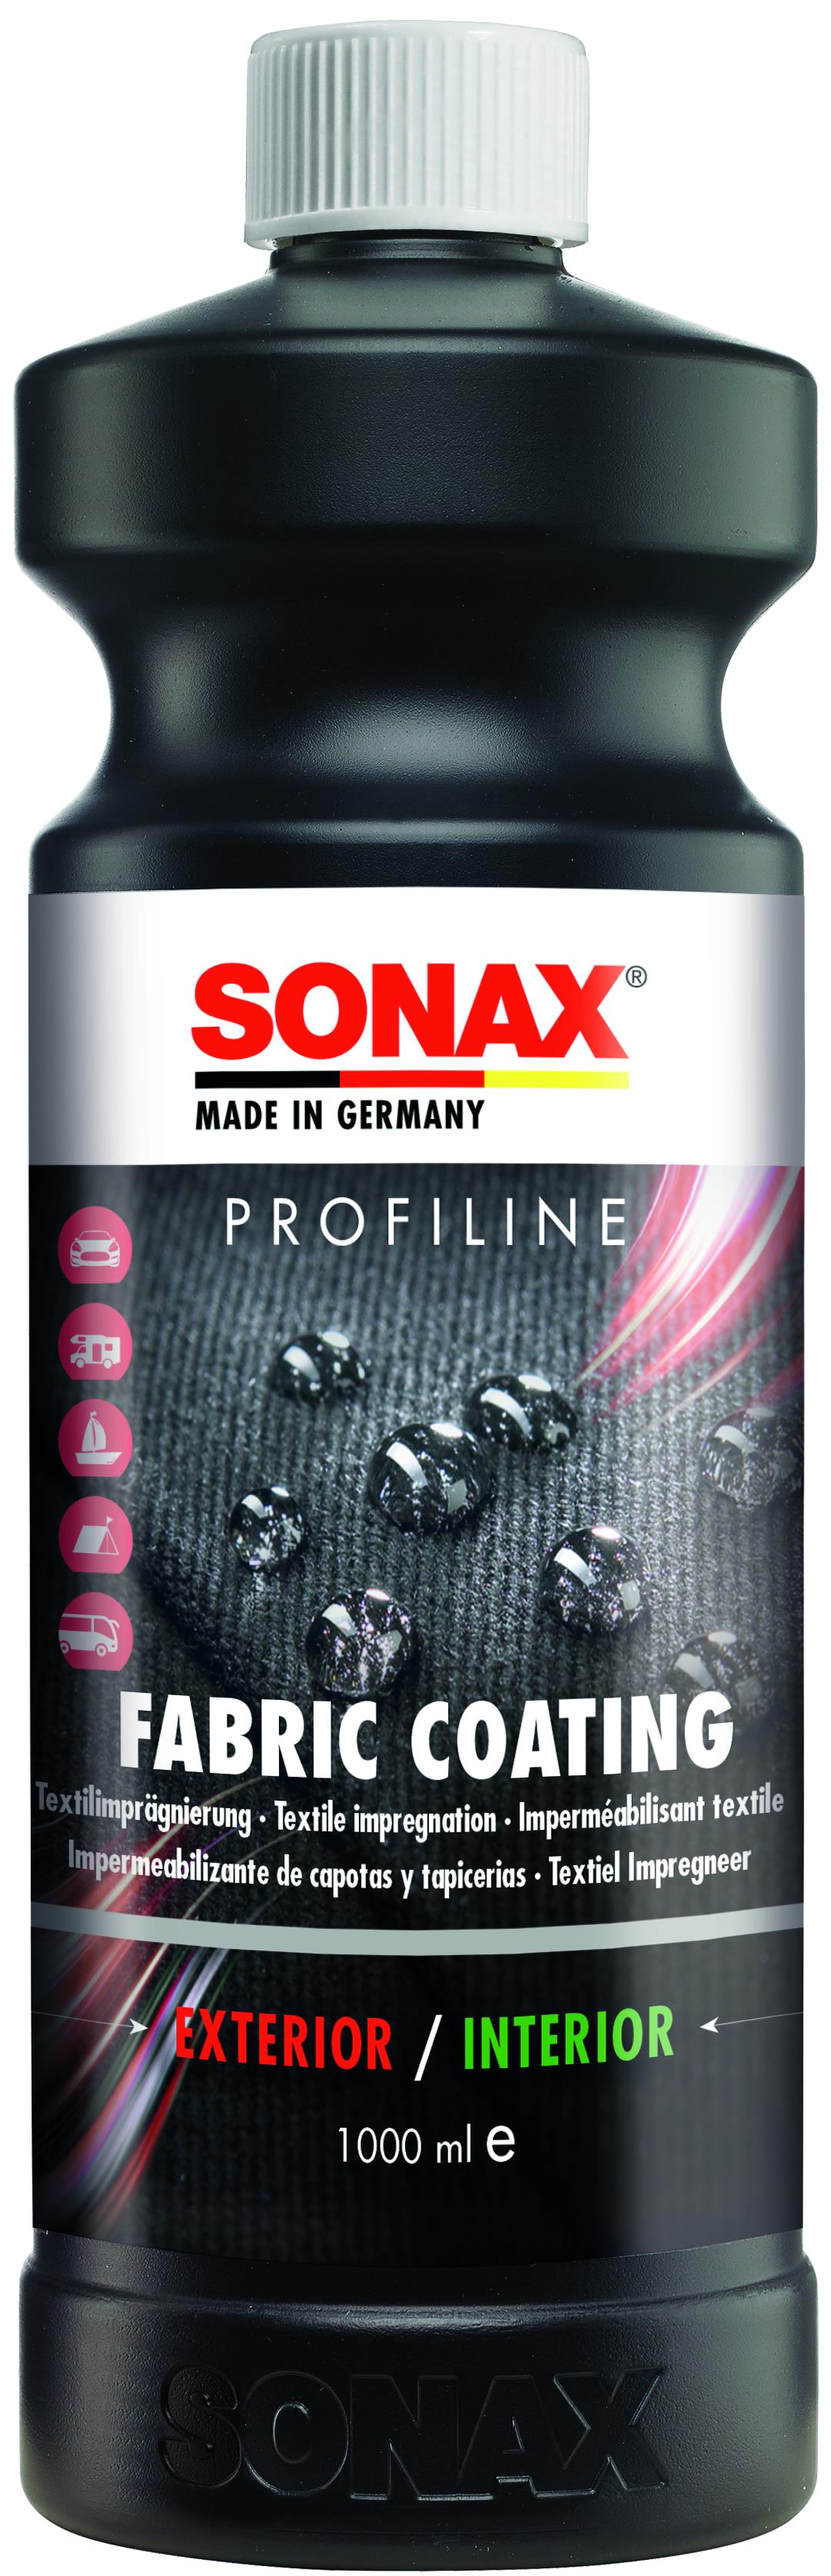 SONAX PROFILINE ReifenGlanz 5L